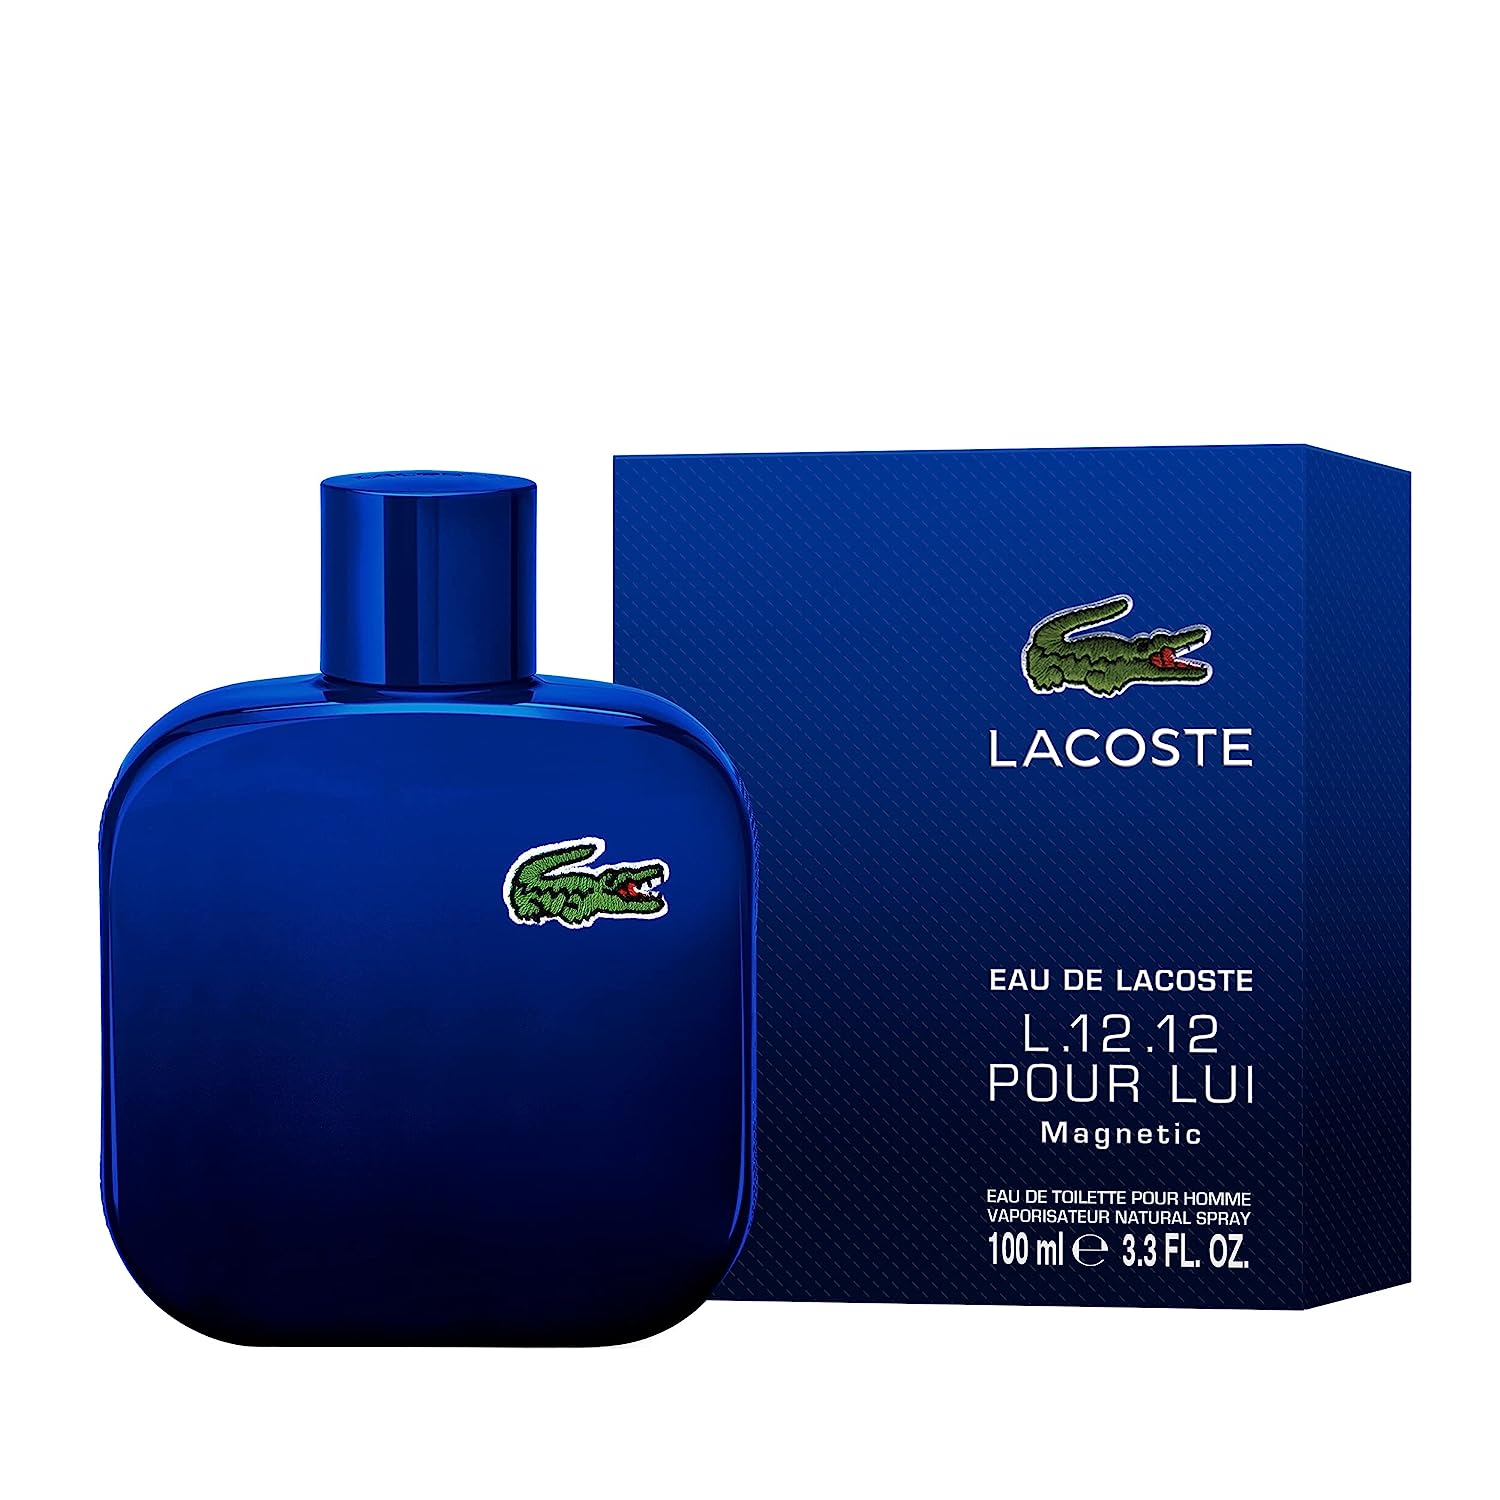 Eau de Lacoste L.12.12 Pour Lui Magnetic by Lacoste 3.3 oz EDT Spray for Men